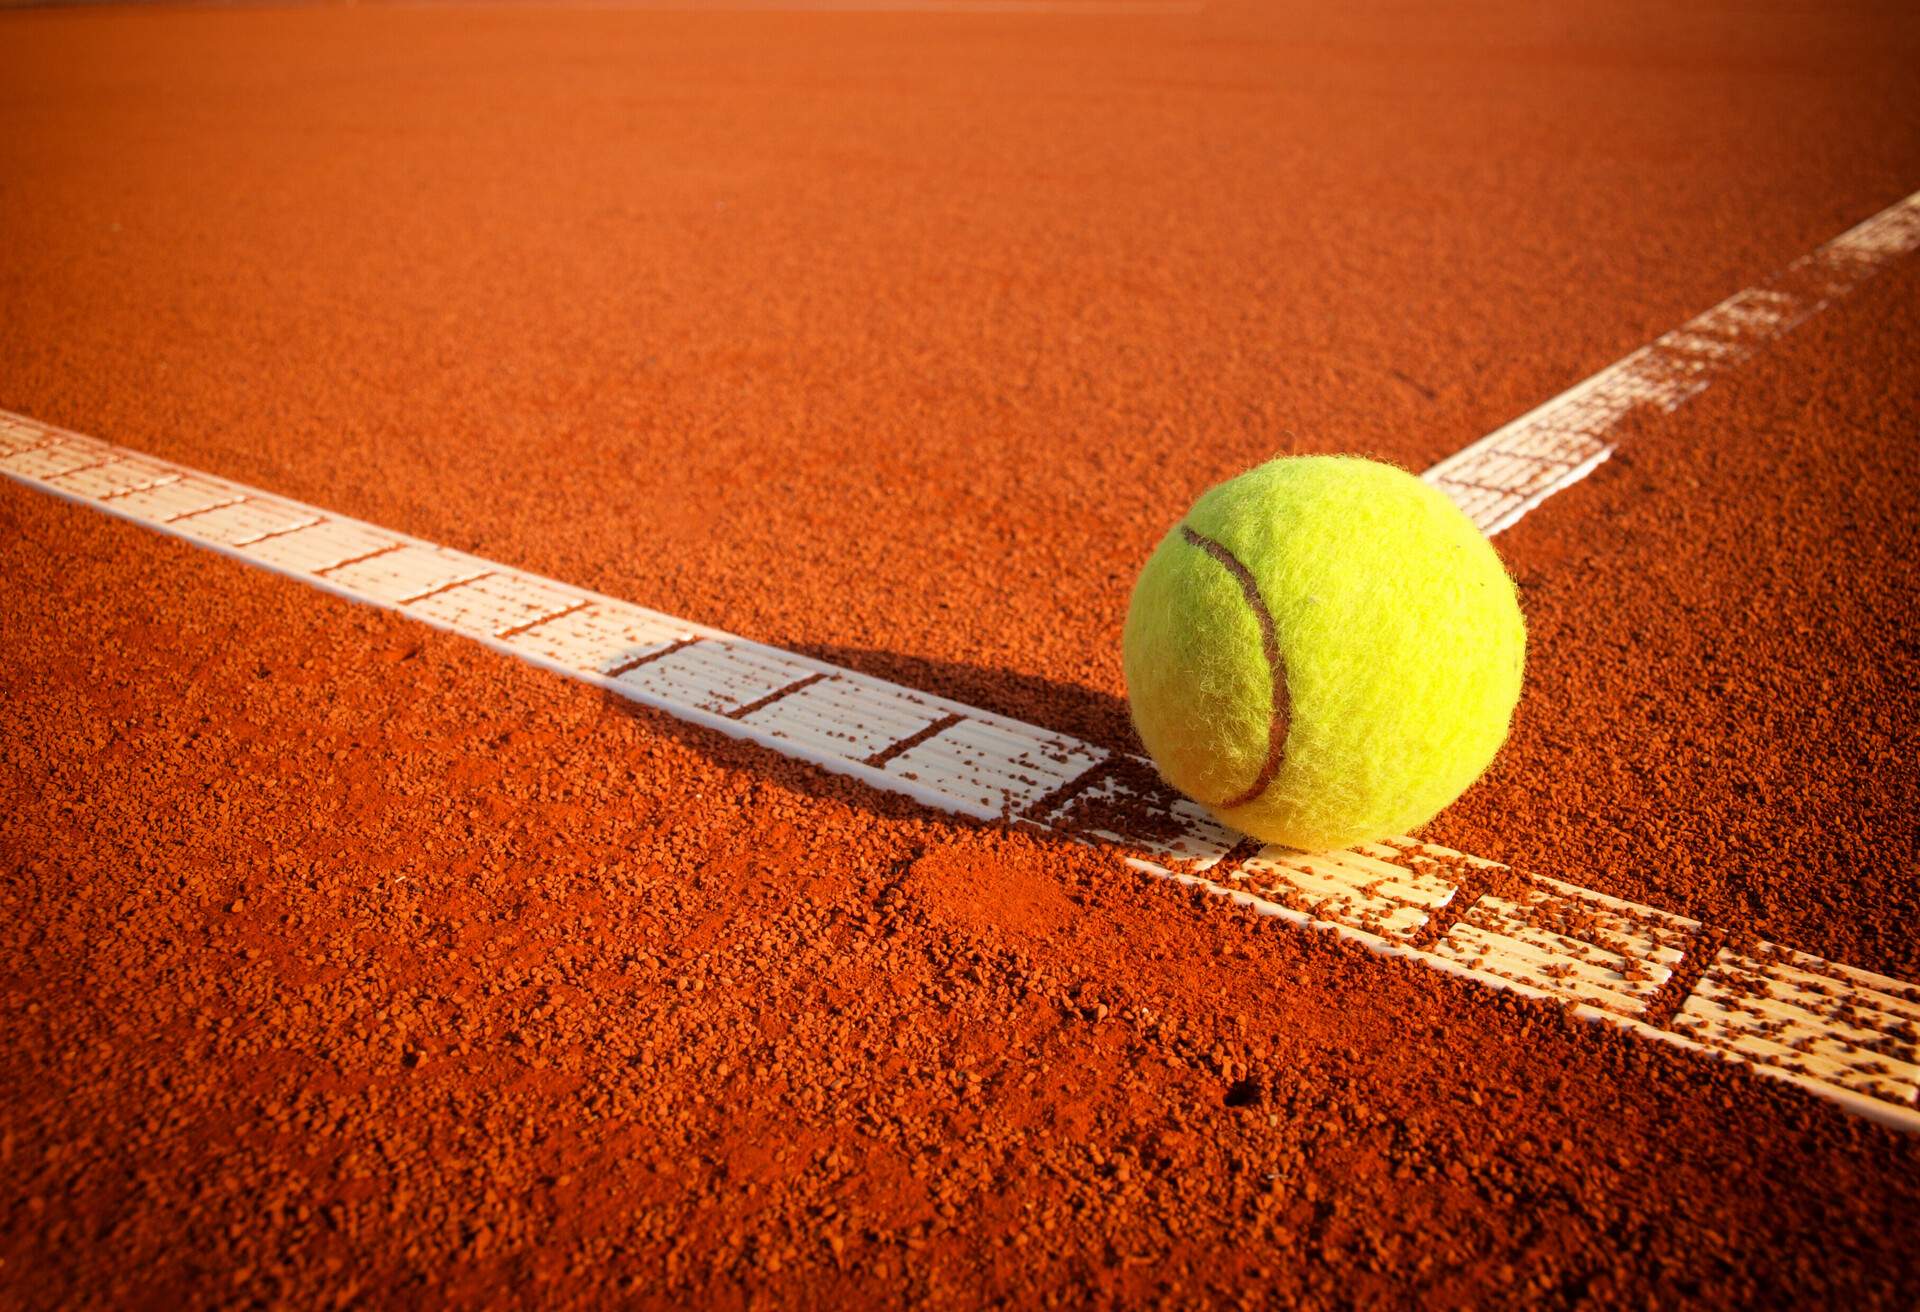 A tennis ball on a tennis clay court.